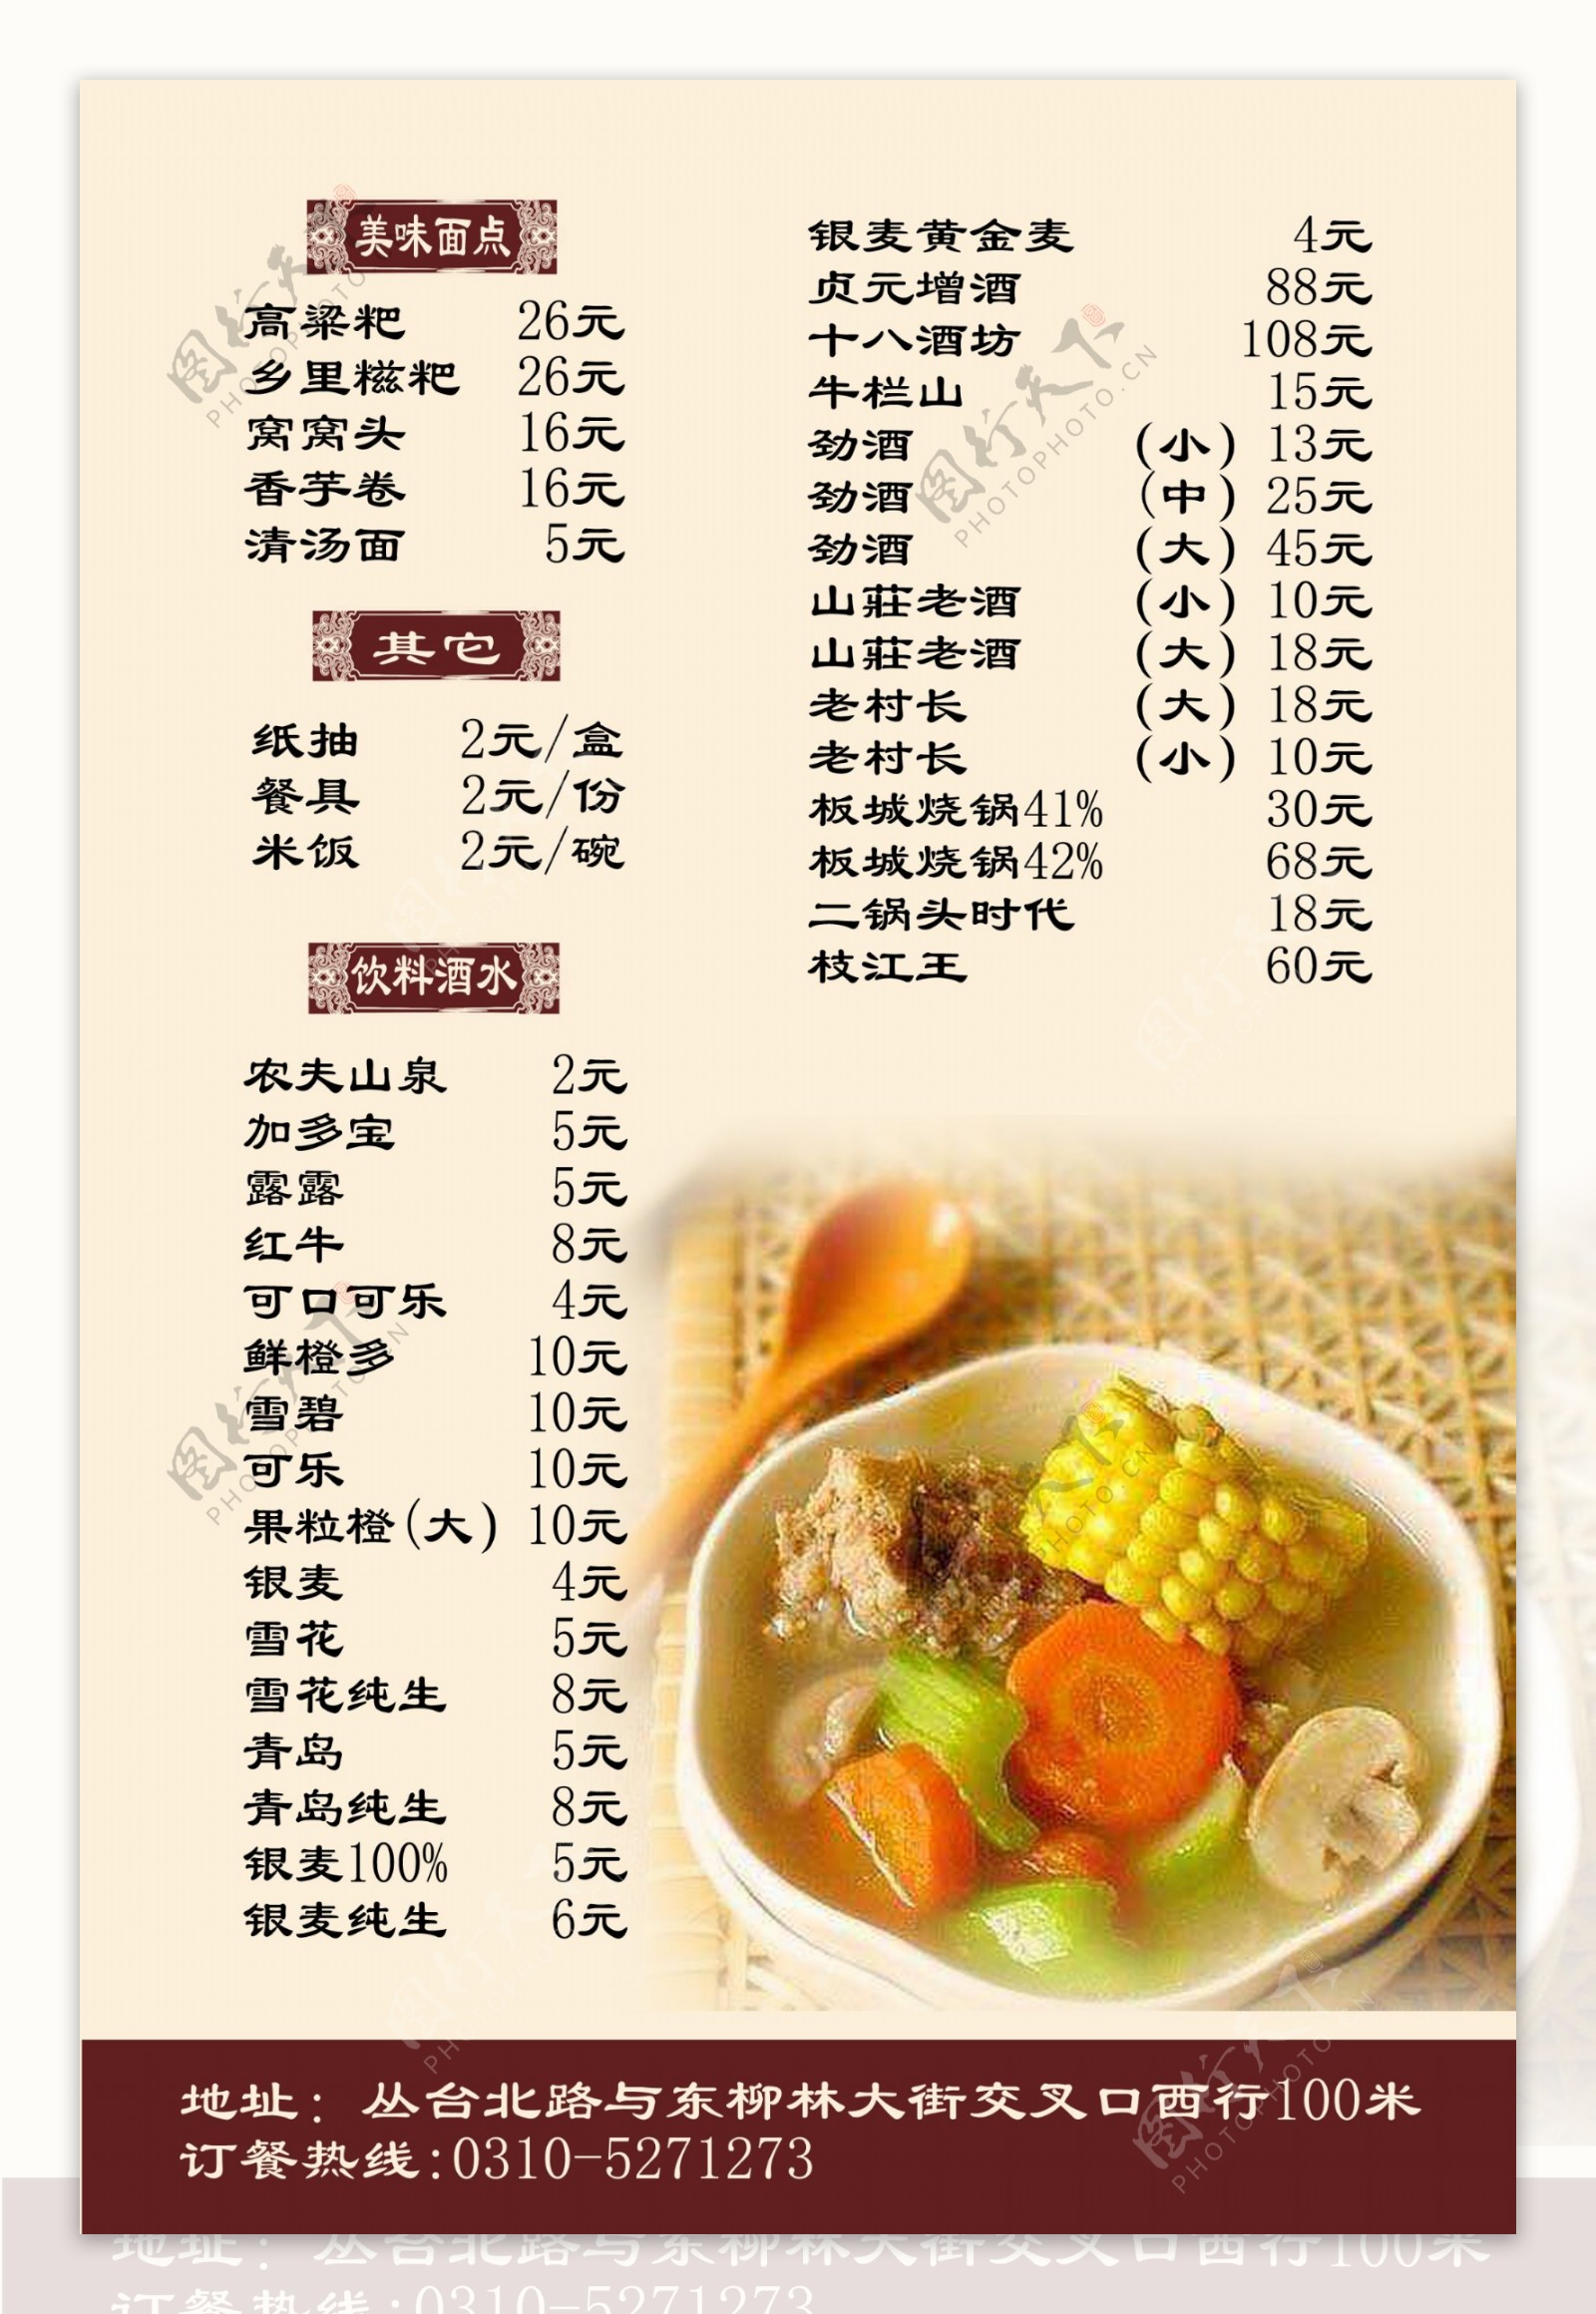 潇湘食府菜单